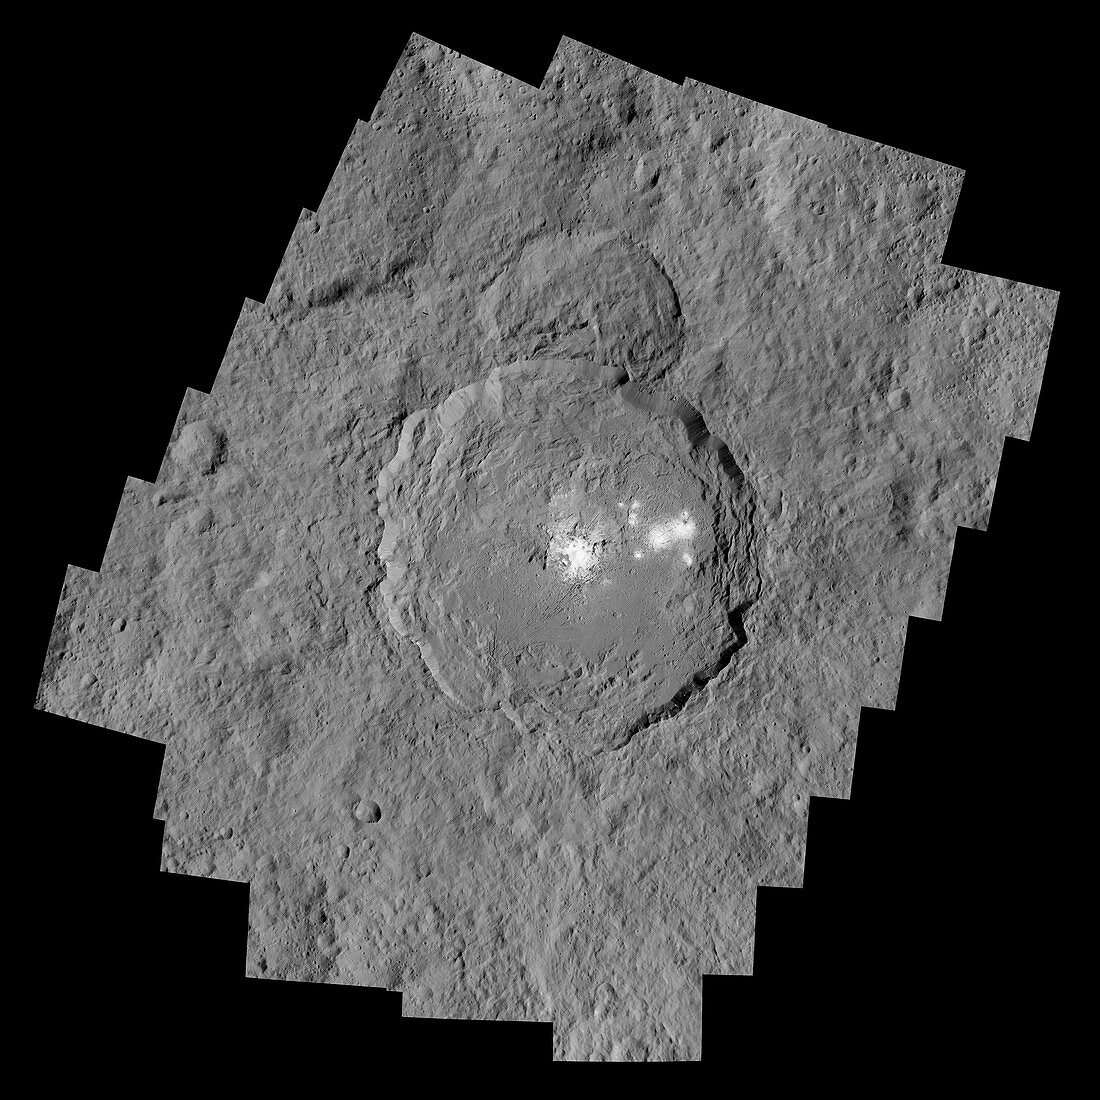 Occator Crater, Ceres, satellite image